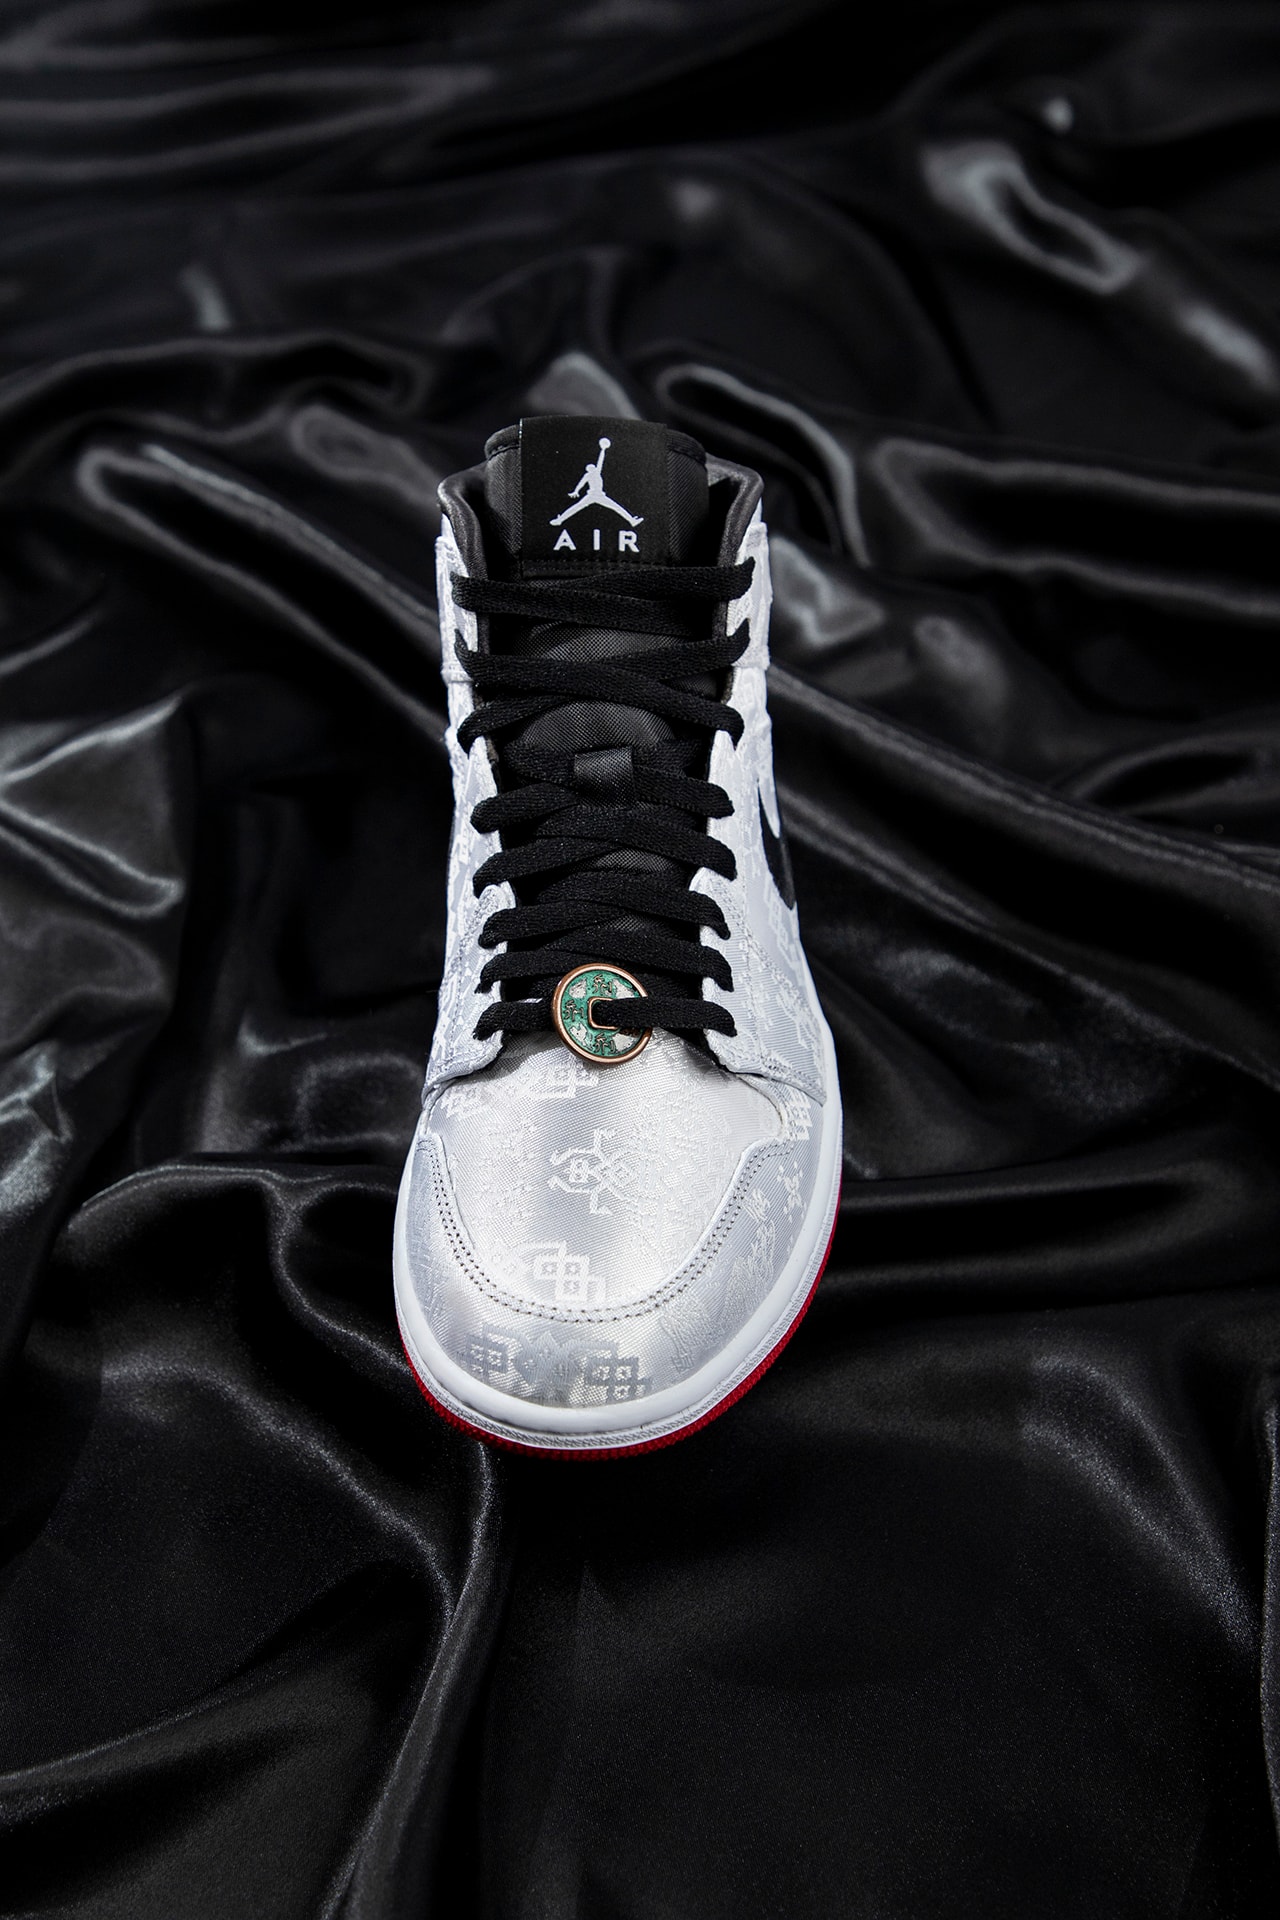 CLOT x Air Jordan 1 Mid 最新聯名配色「Fearless」港台抽籤情報公開